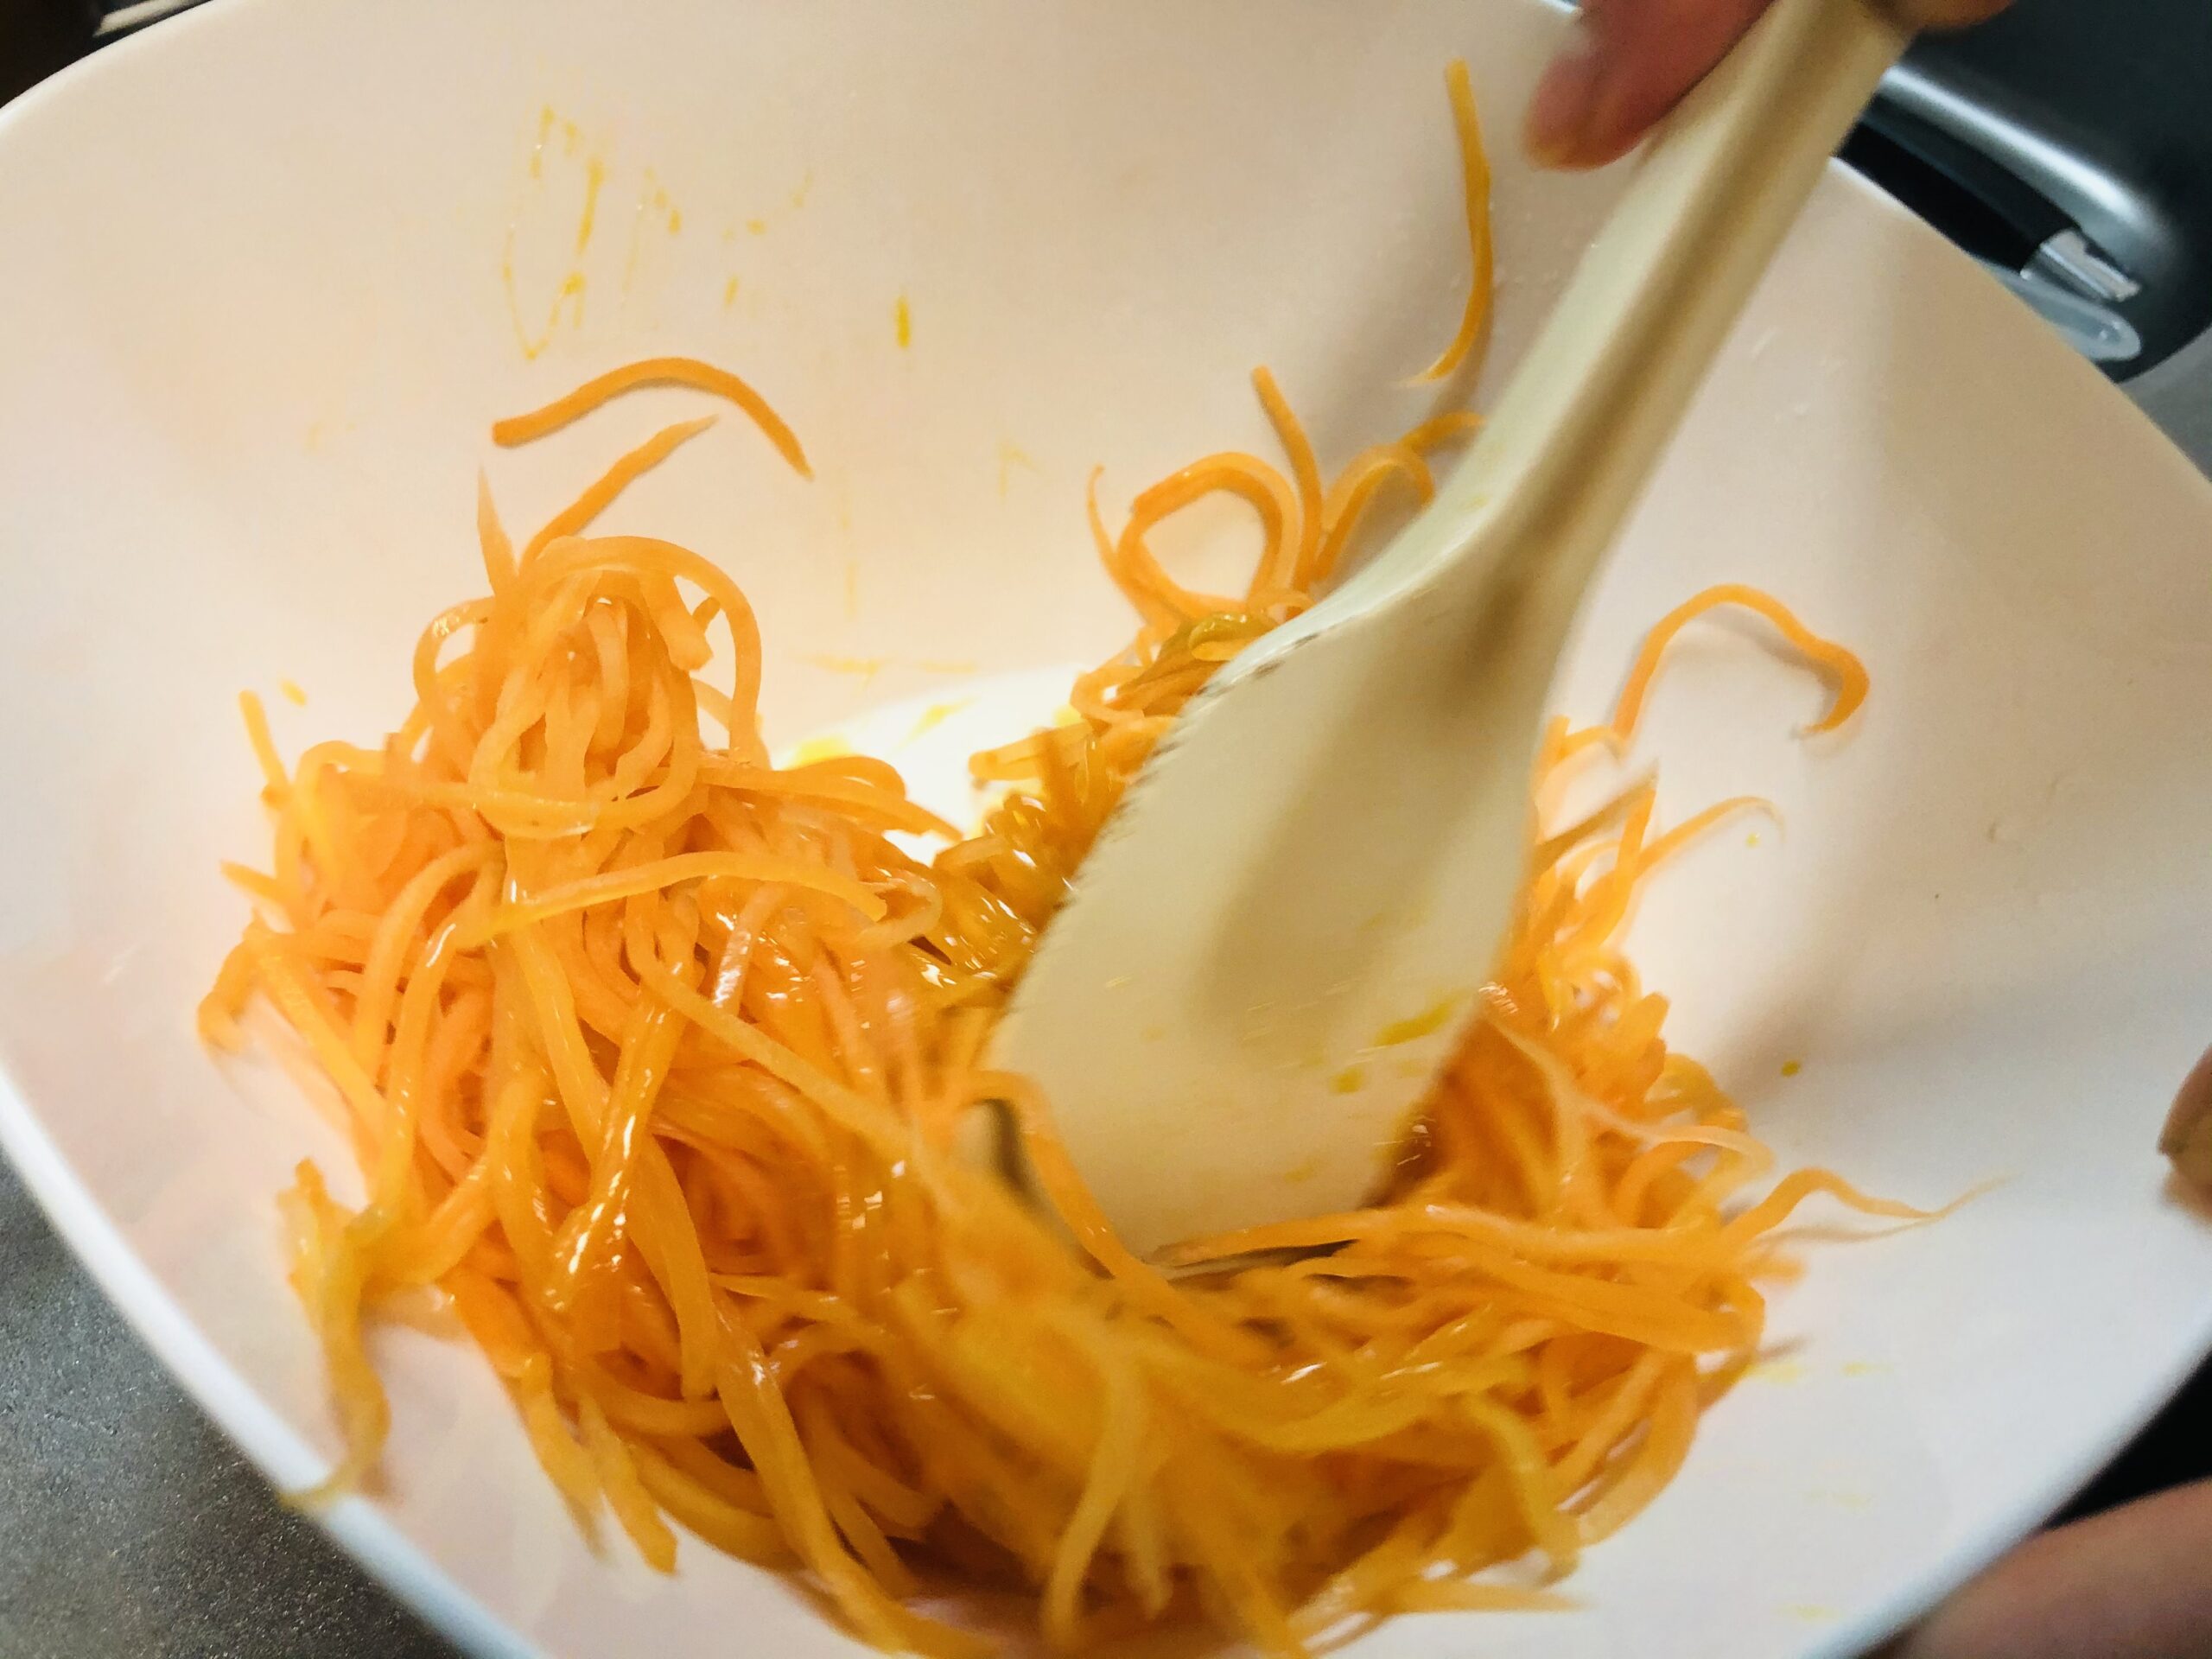 煮詰めたオレンジジュースとニンジンの細切りをゴムベラで混ぜ合わせている様子の画像です